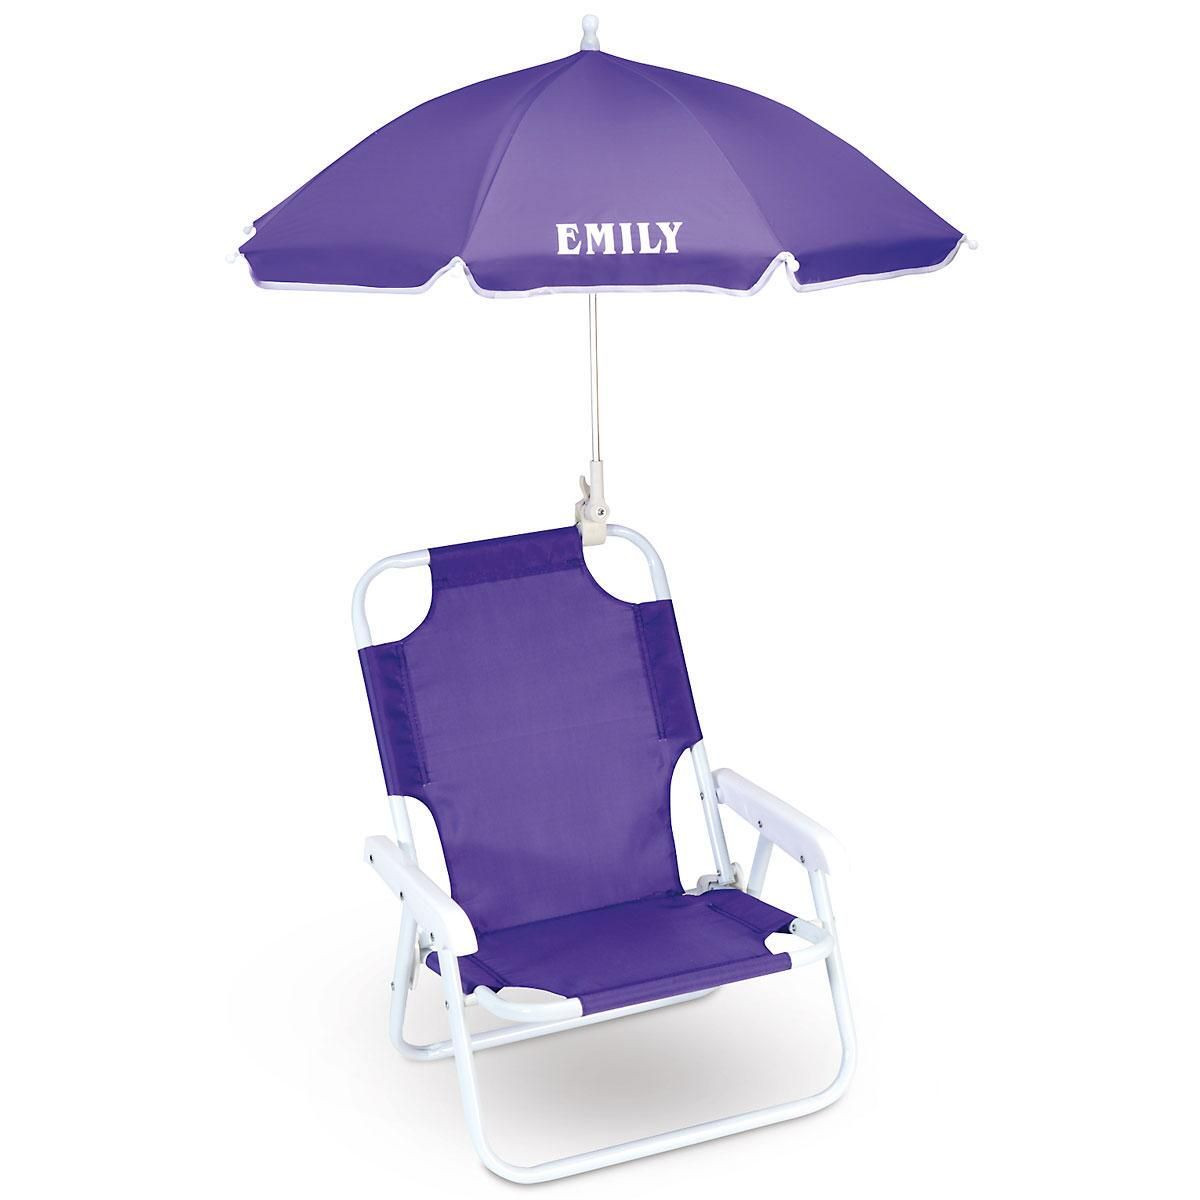 Kids Beach Chair With Umbrella
 Umbrella Beach Chair for Kids